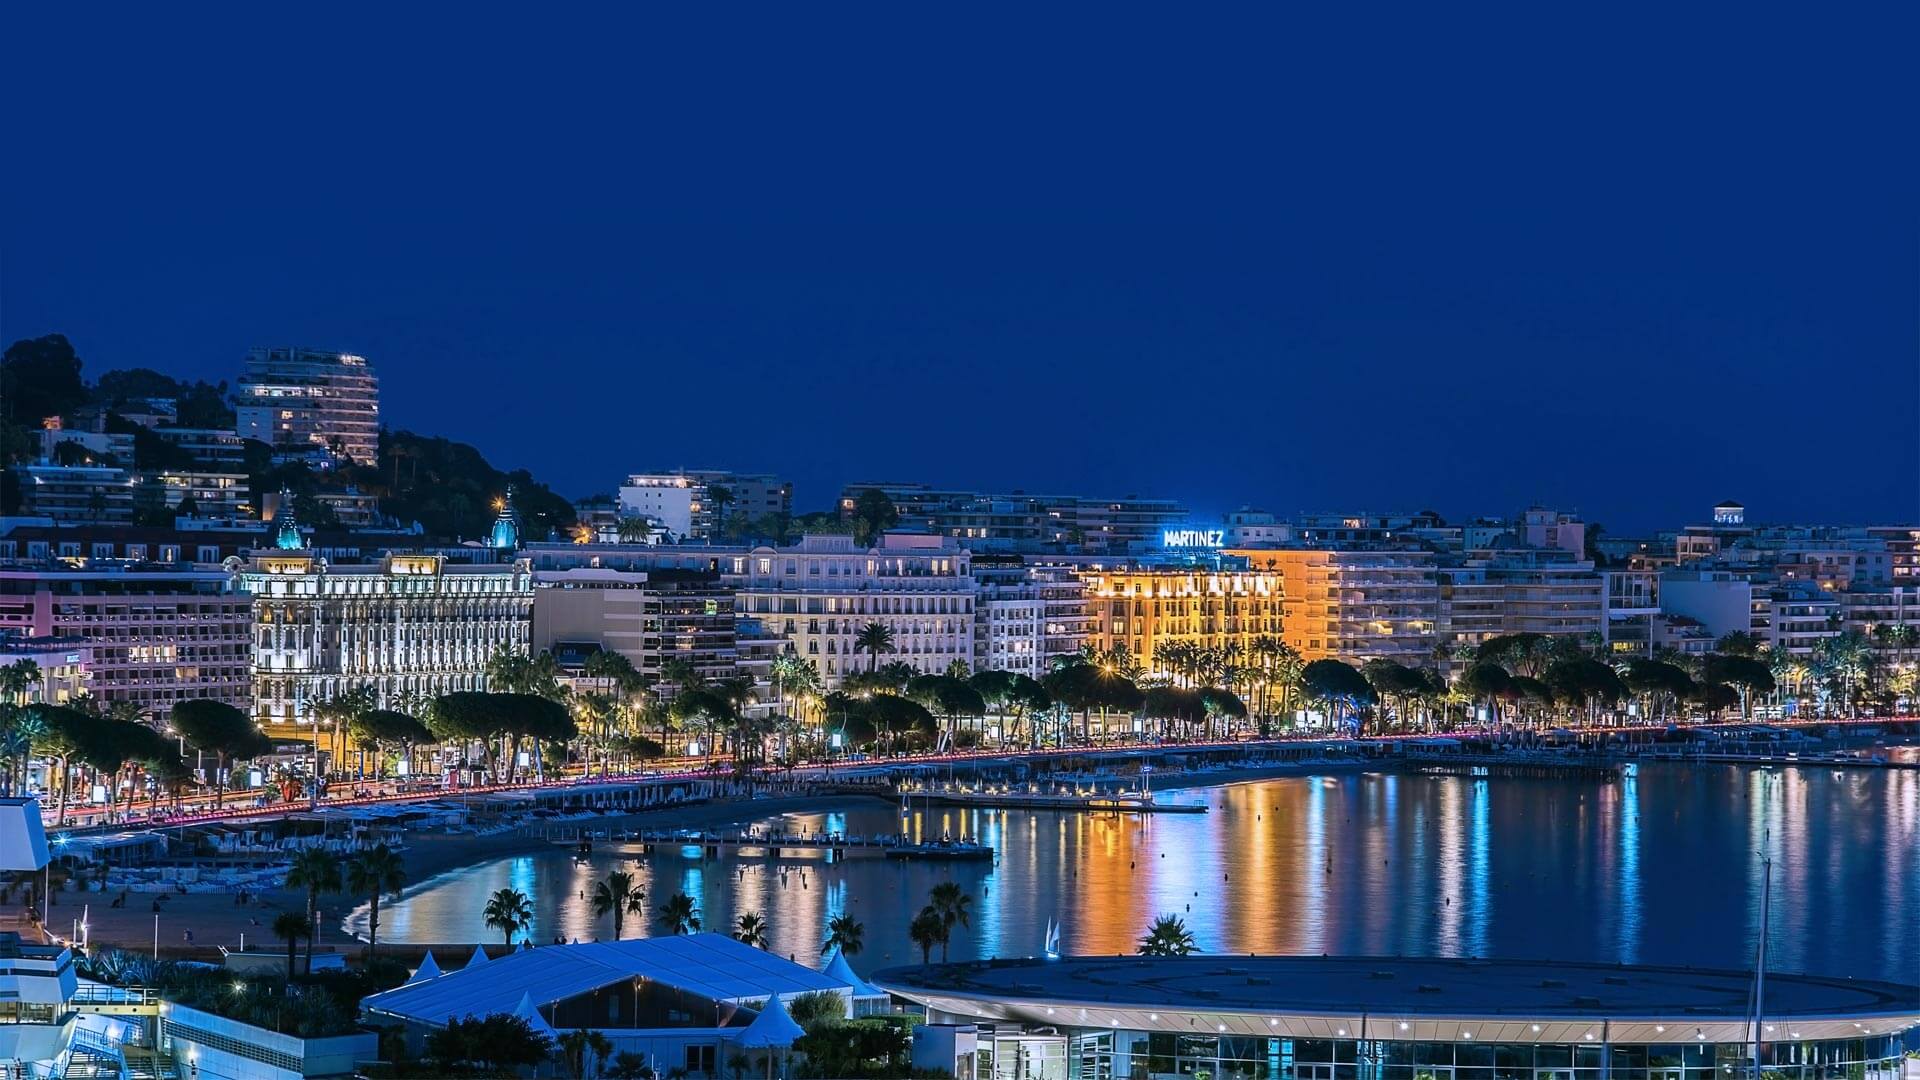 Hôtel Martinez Cannes | Condé Nast Traveler